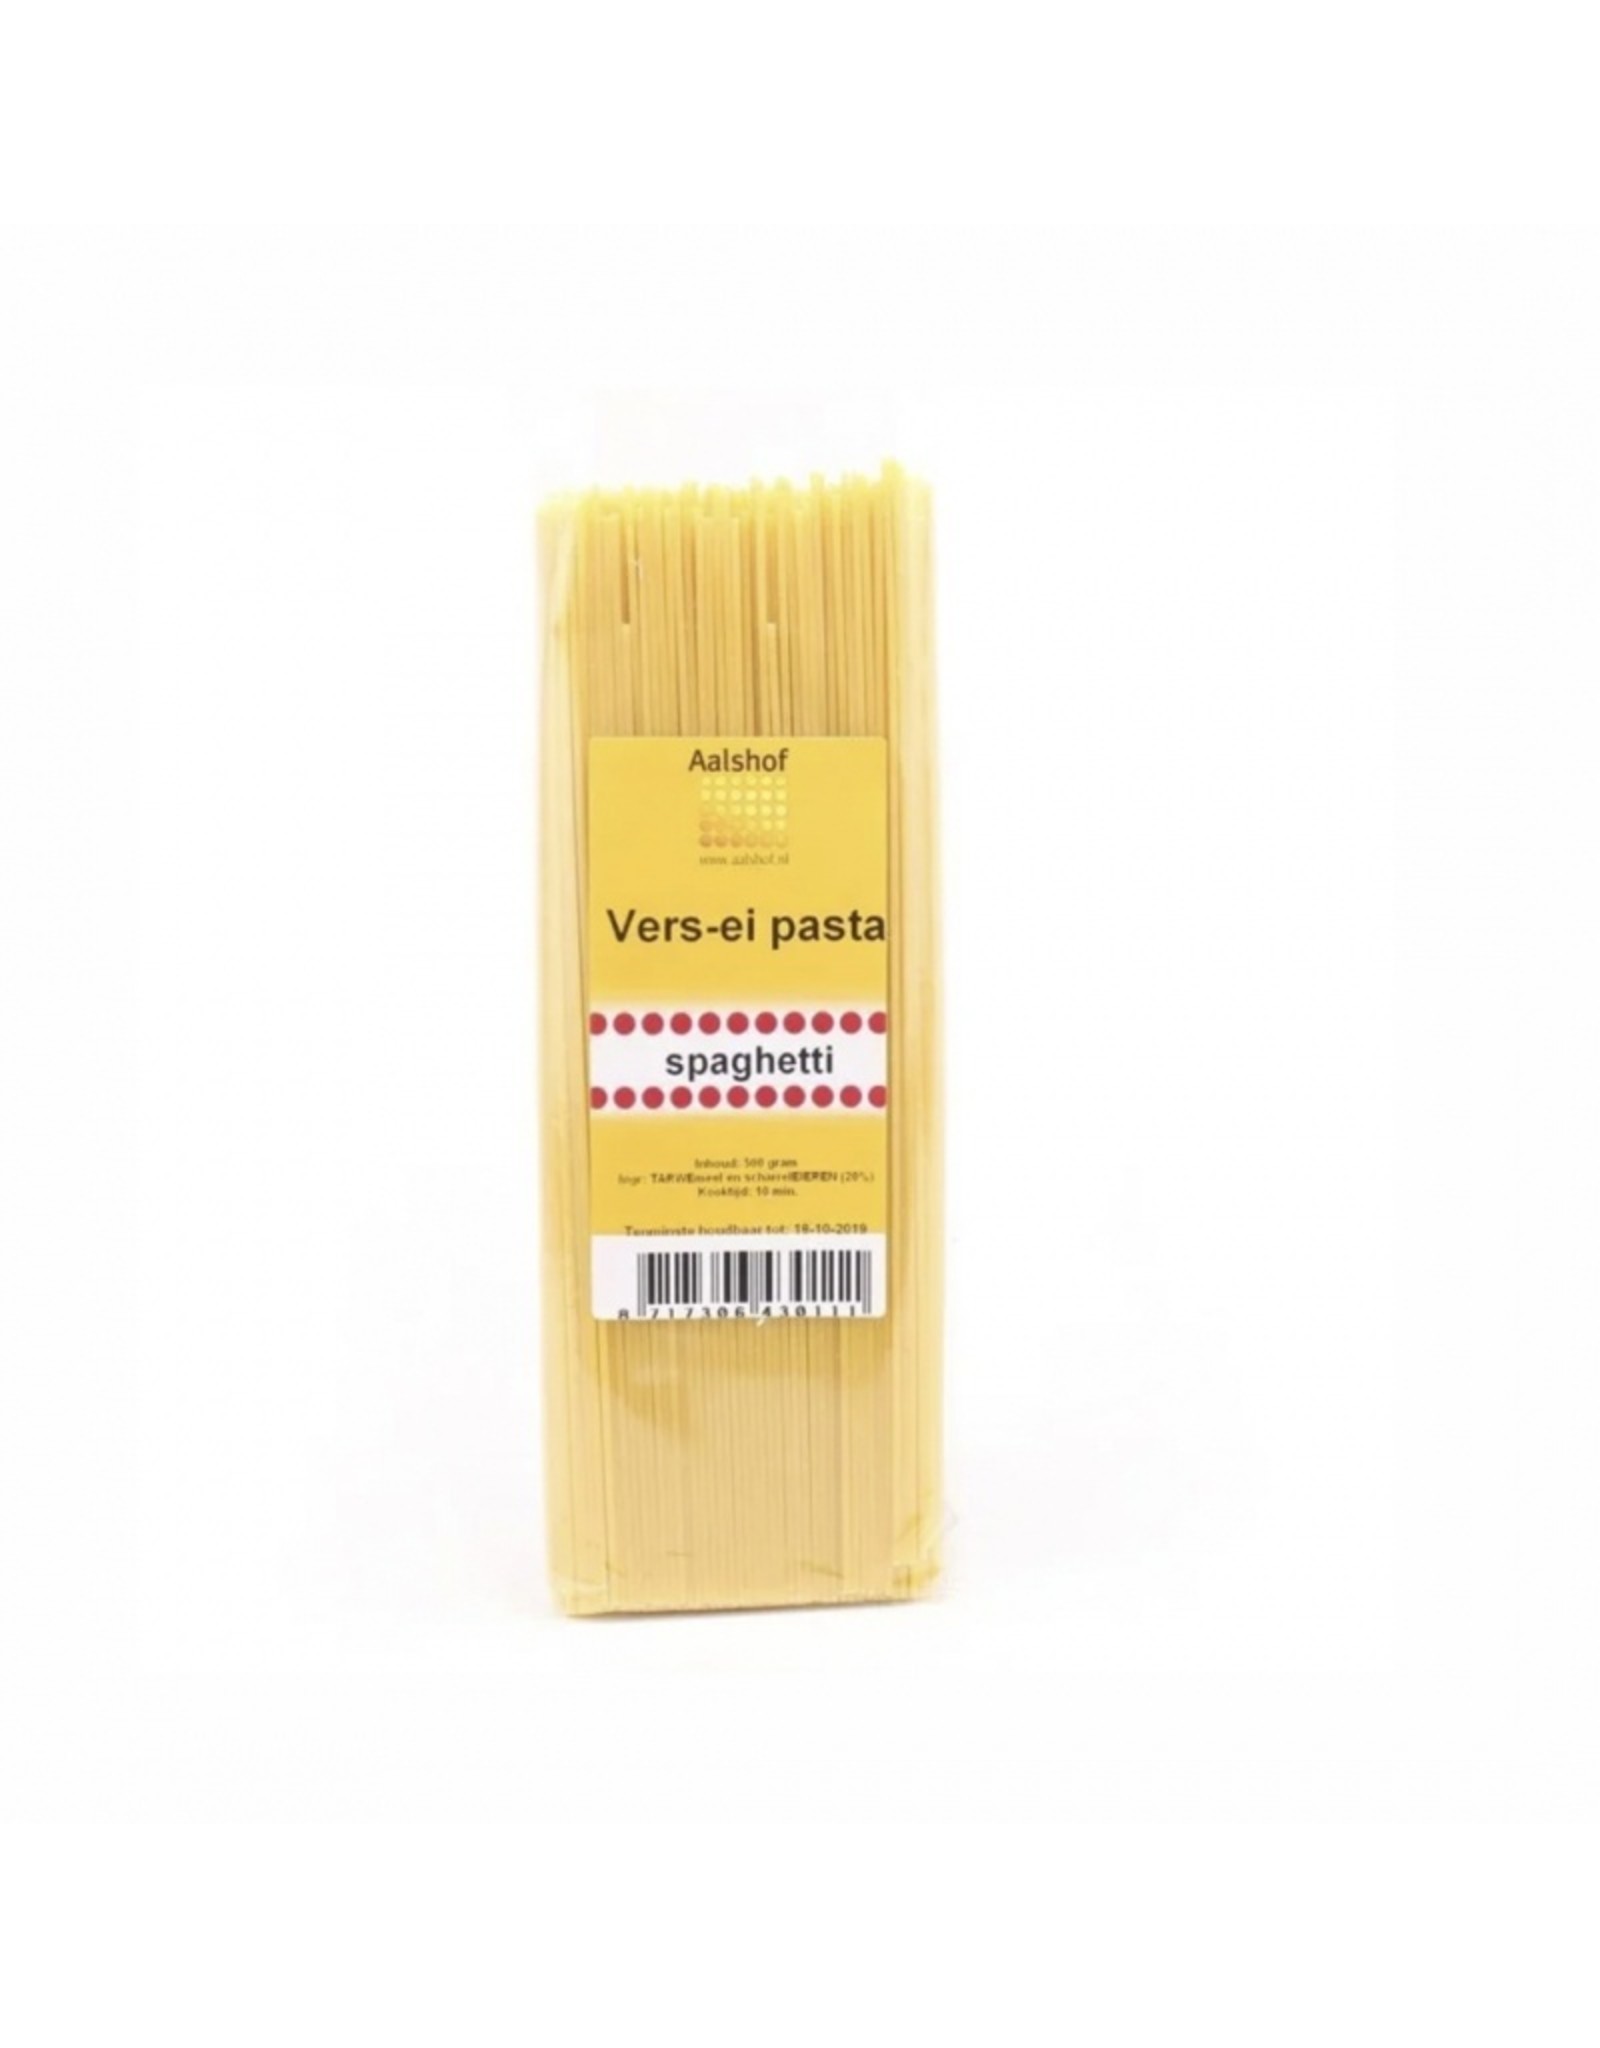 Aalshof Vers-ei pasta spaghetti 500 gr